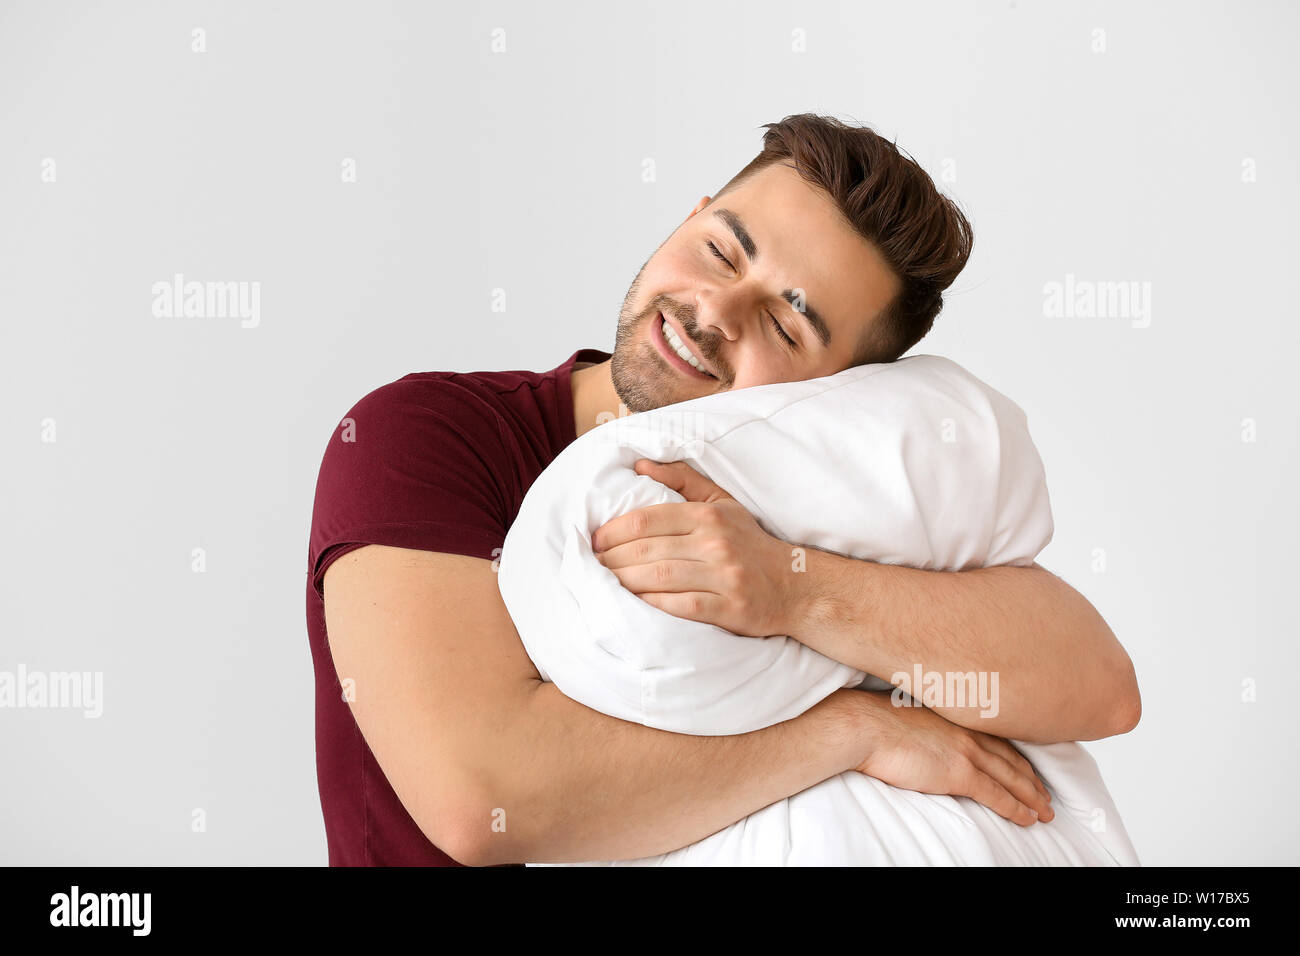 Schöner Mann umarmen Kissen gegen den weißen Hintergrund Stockfotografie -  Alamy